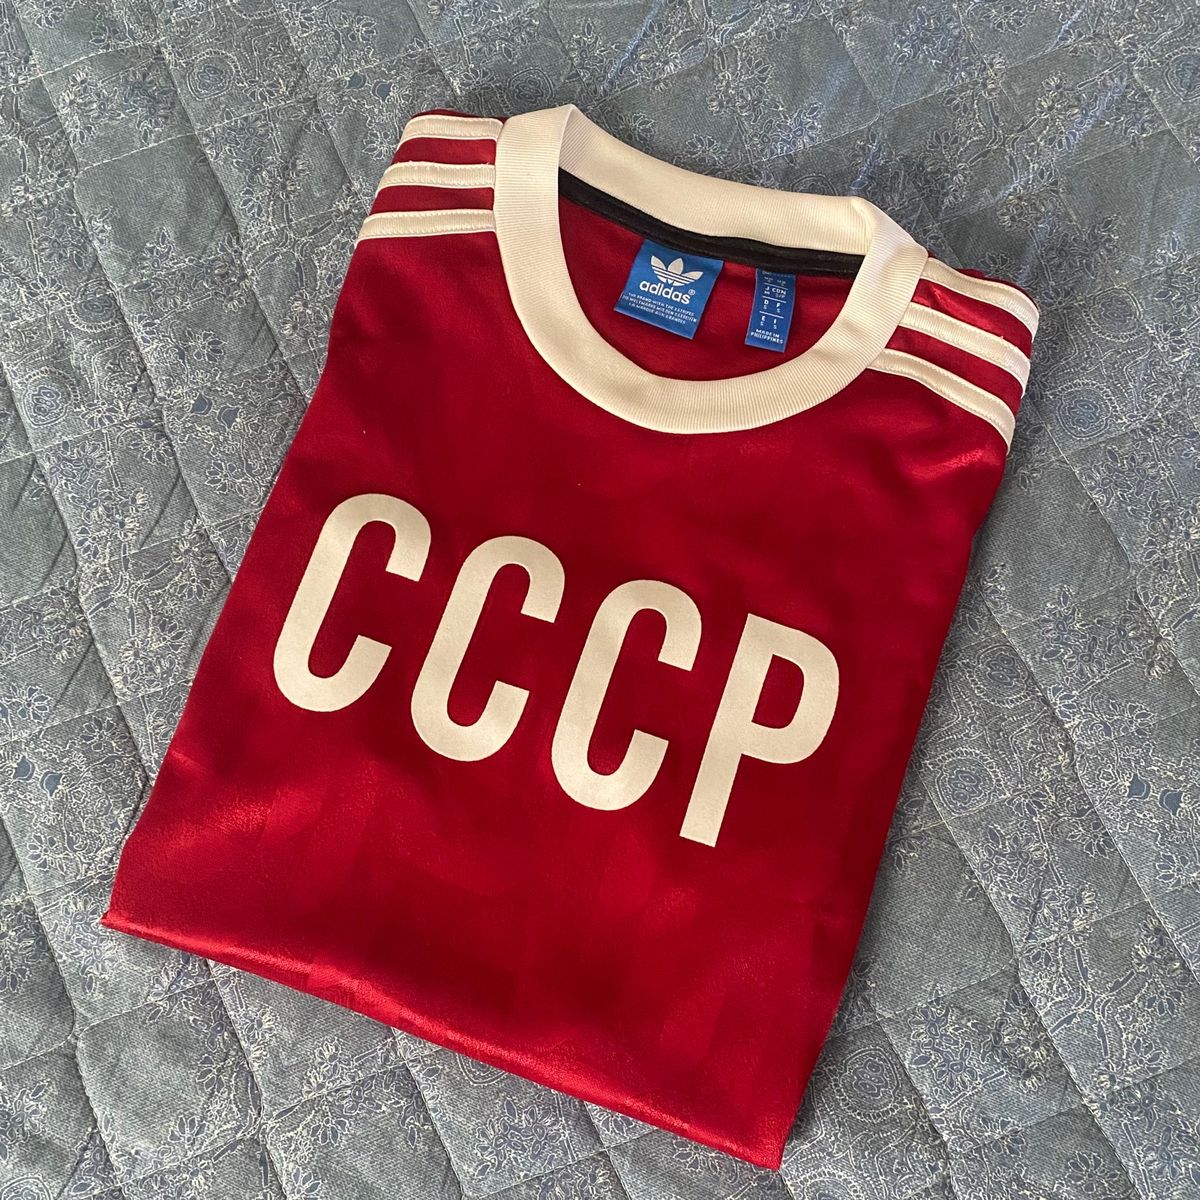 Camisa: Originals - União Soviética (Cccp) | Camisa Adidas Usado 51943871 | enjoei